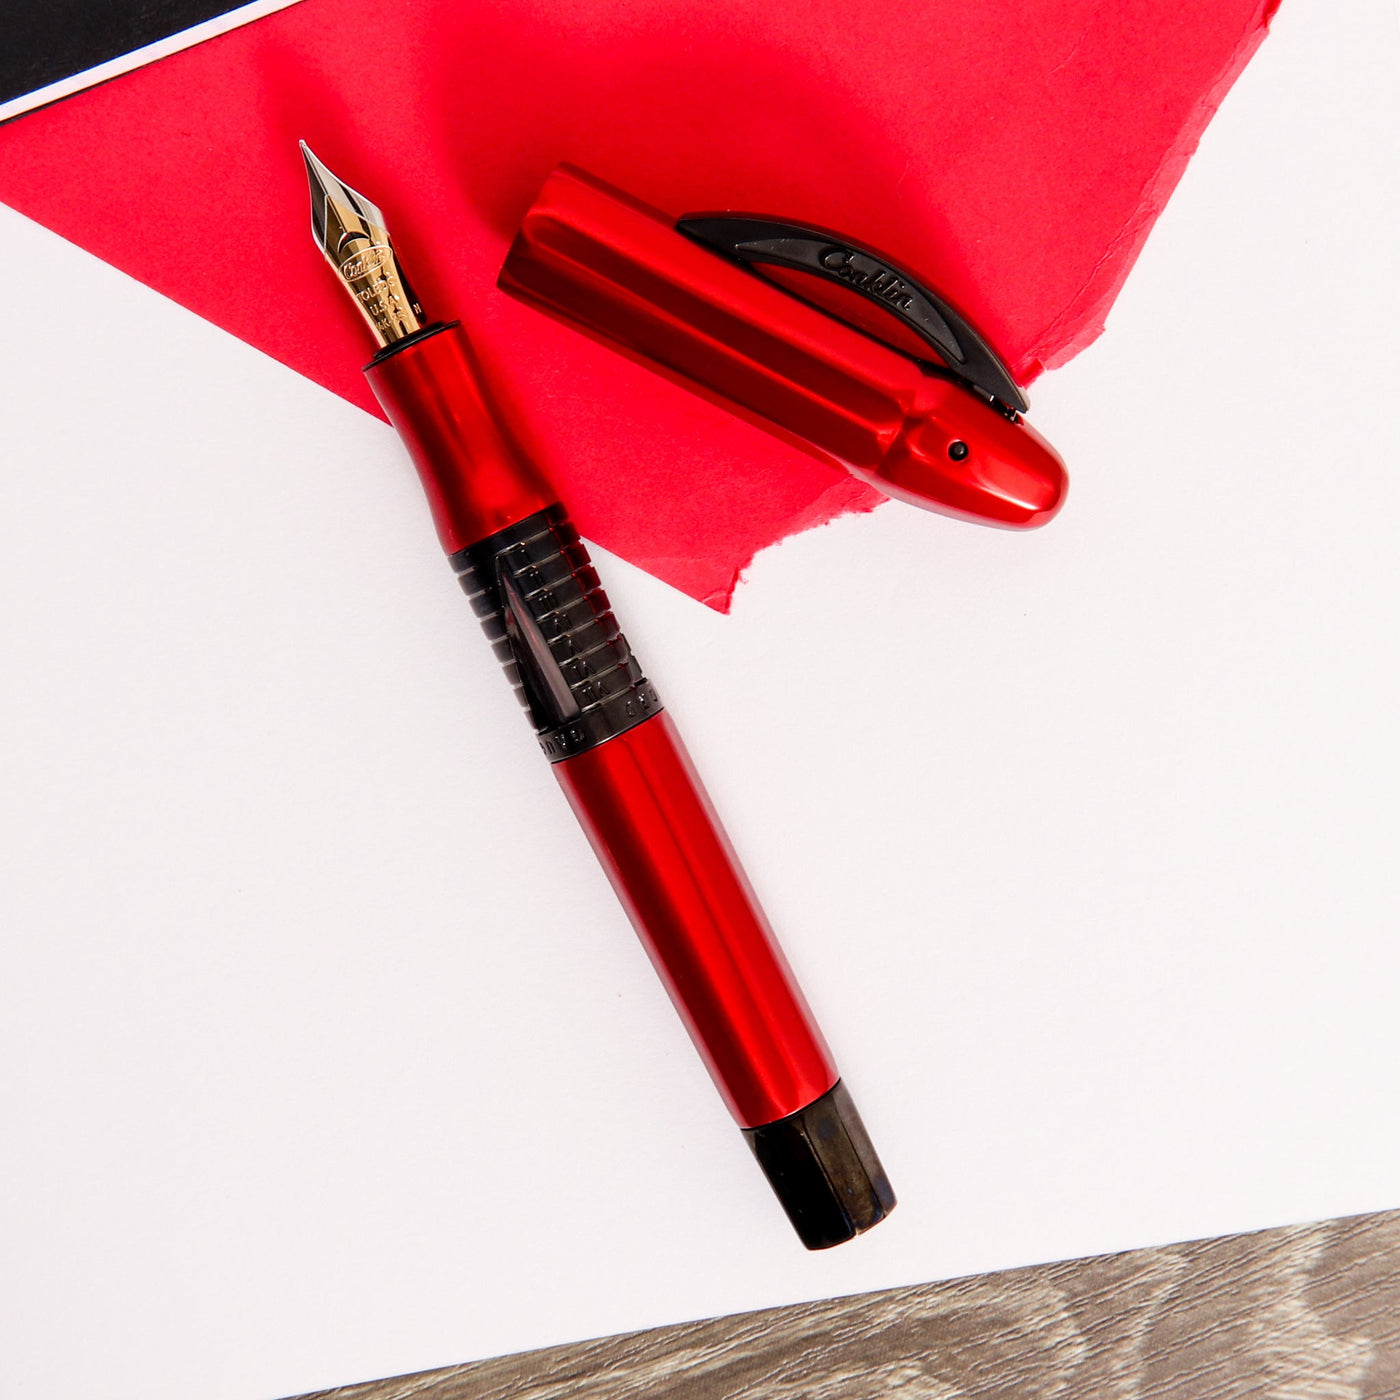 Conklin-Nozac-Classic-125th-Anniversary-Red-Fountain-Pen-With-Black-Trim